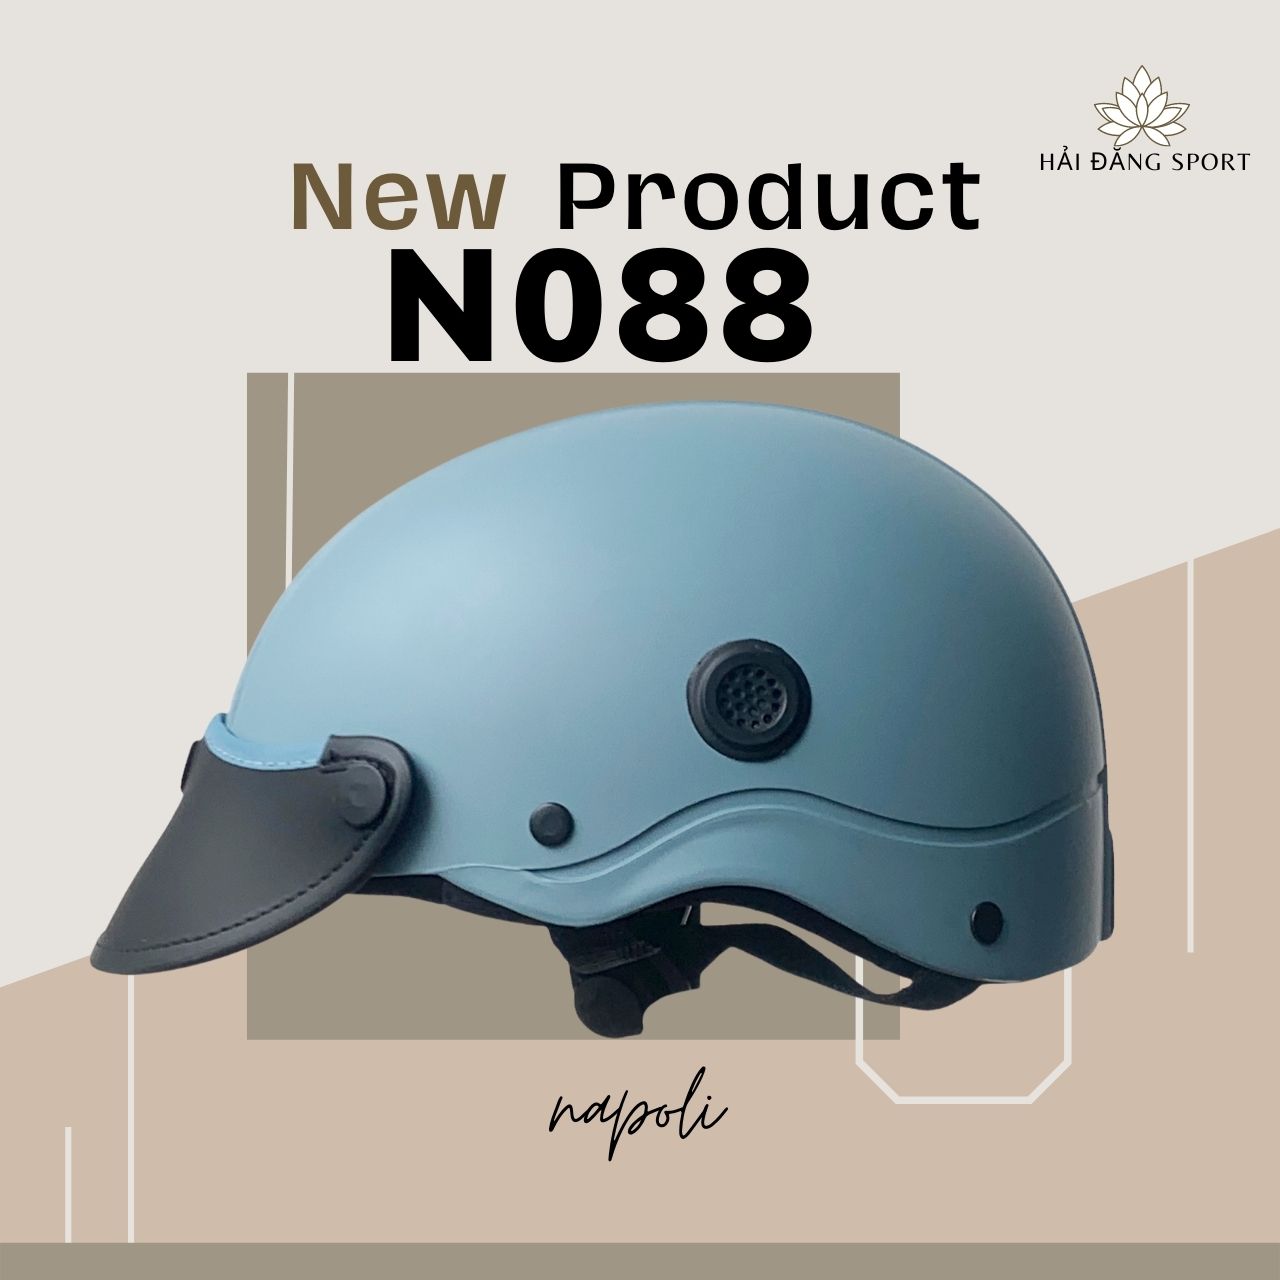 Mũ Bảo Hiểm 1/2 Đầu Napoli N088 New lớp đệm lót và lỗ thông gió (FreeSize 54-57cm) - Bảo Hành 12 Tháng